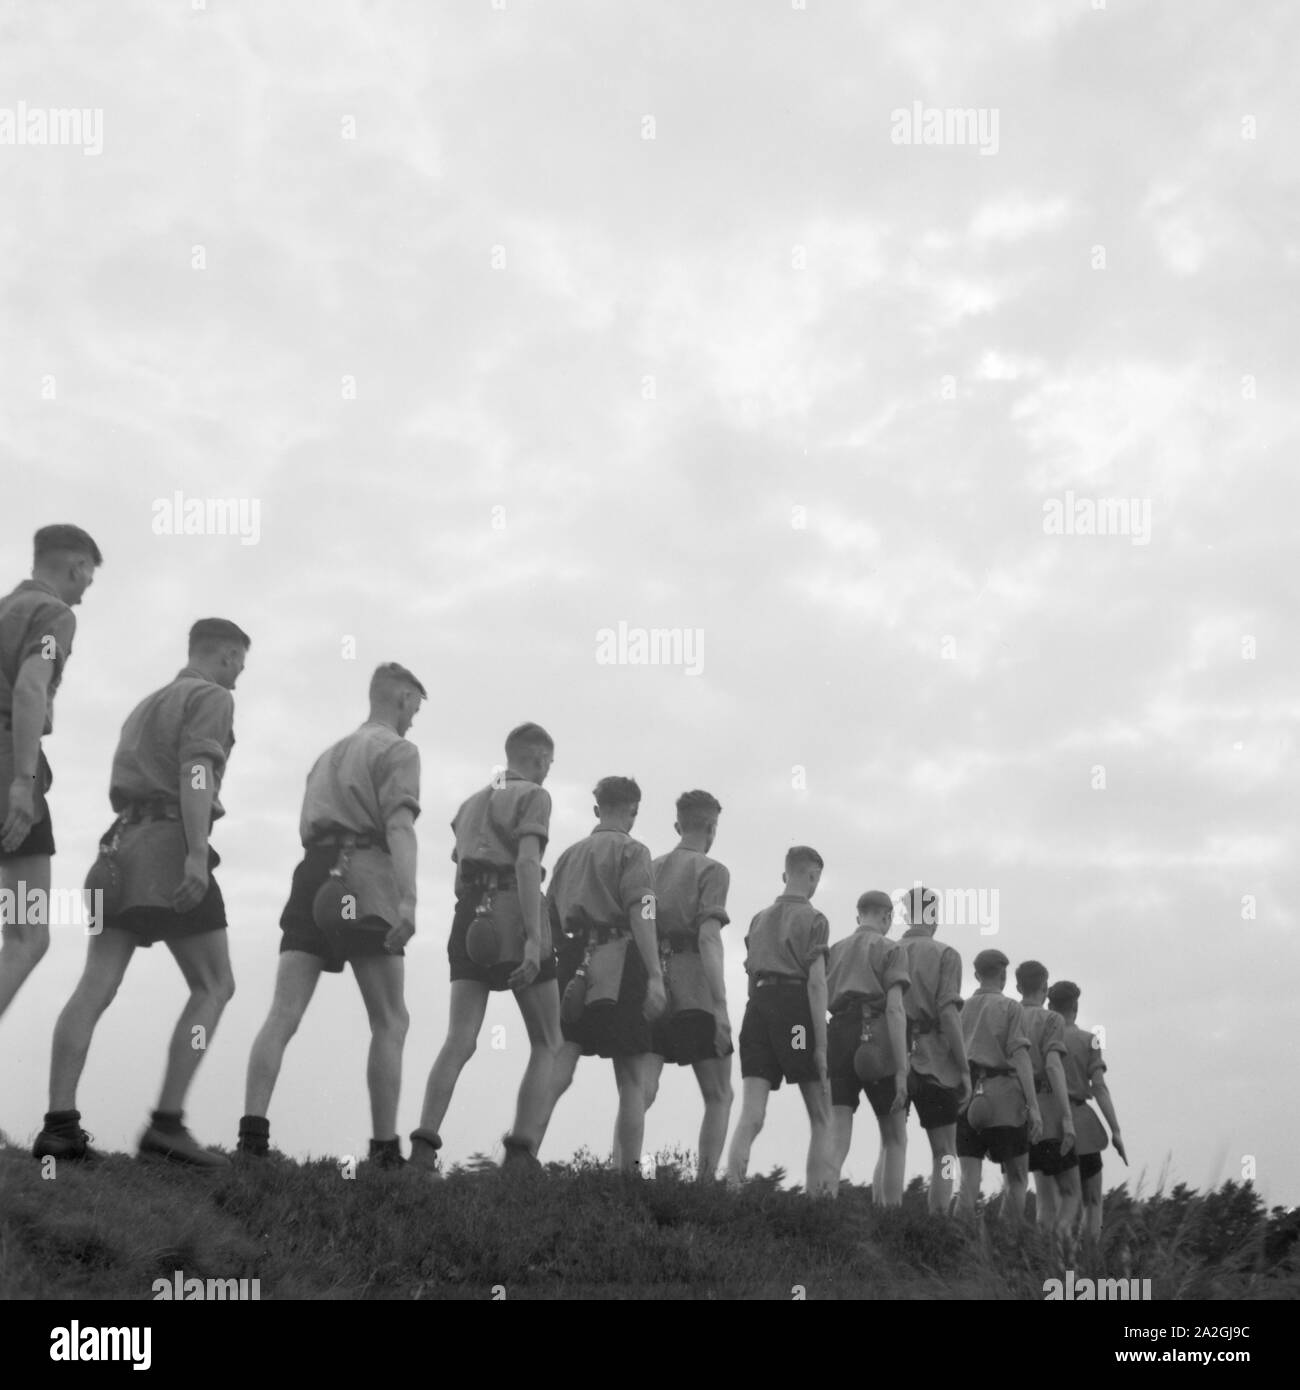 Hitlejugend marschiert in einer Reihe in Westfalen, Deutschland 1930er Jahre. Hitler giovani marching una fila in Westfalia, Germania 1930s. Foto Stock